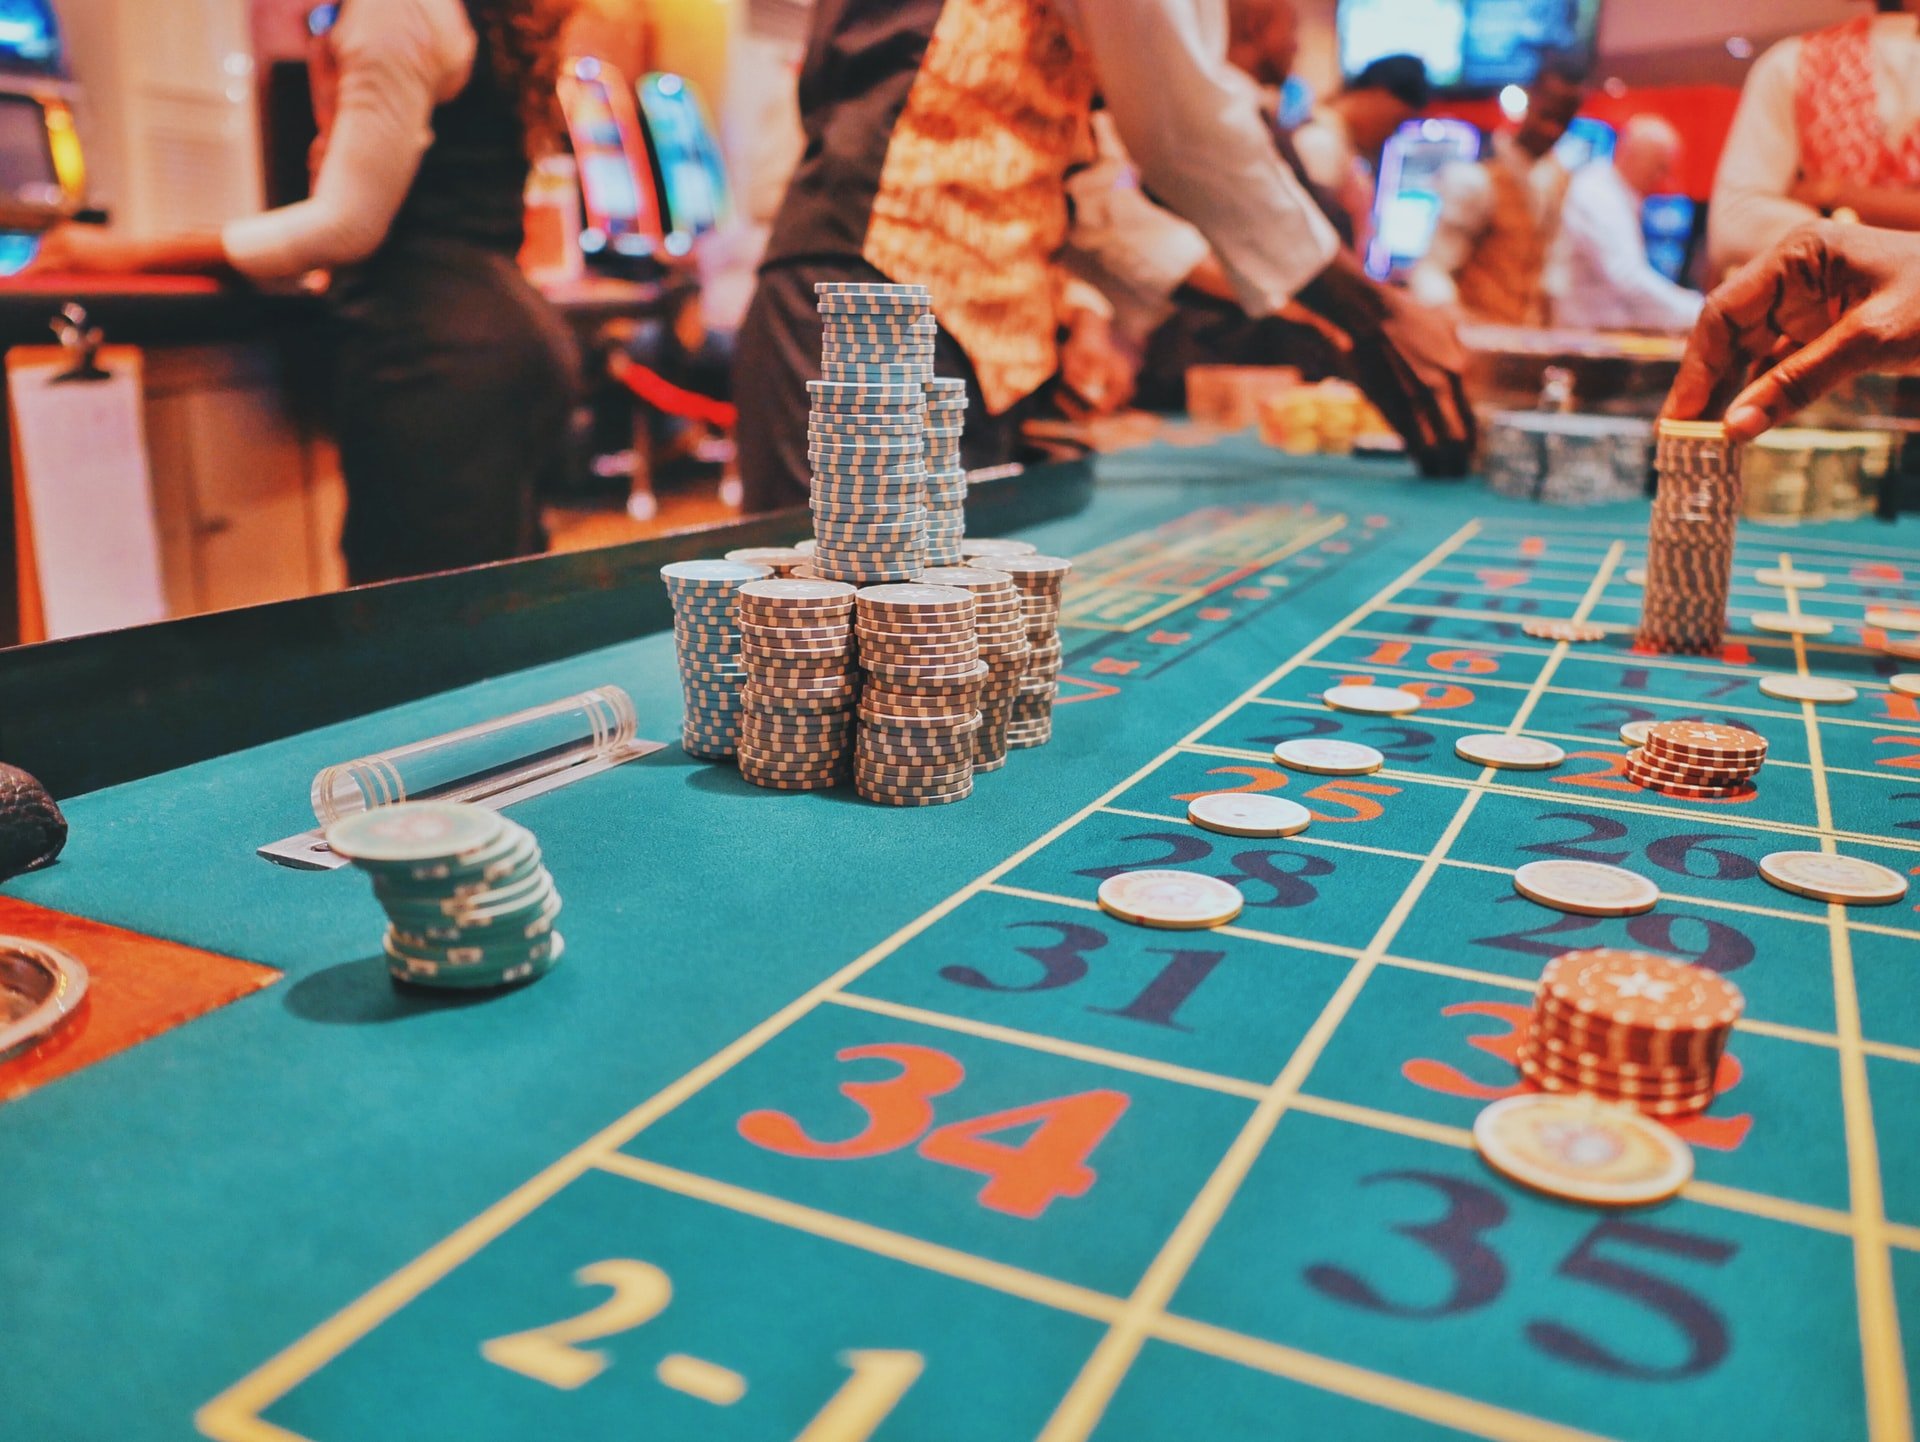 Varför lockar online casino så mycket?